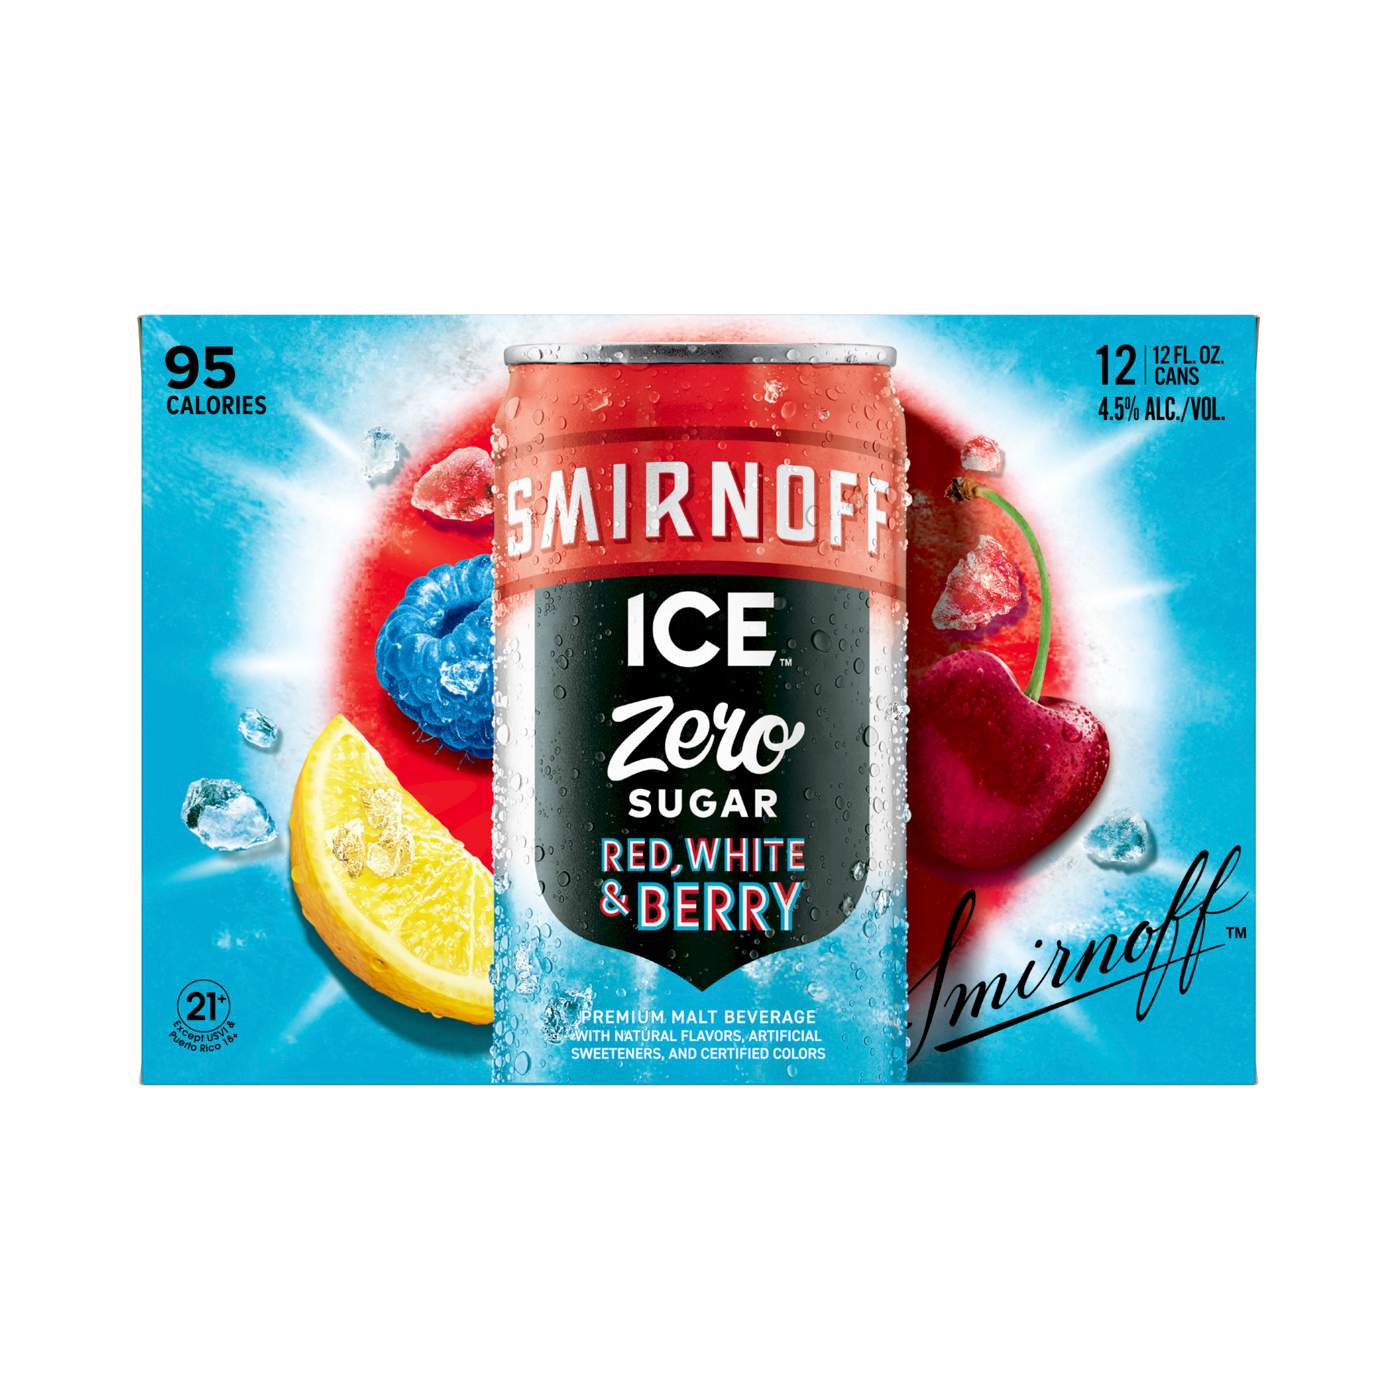 Smirnoff Ice Zero Sugar Red, White, Berry; image 3 of 4